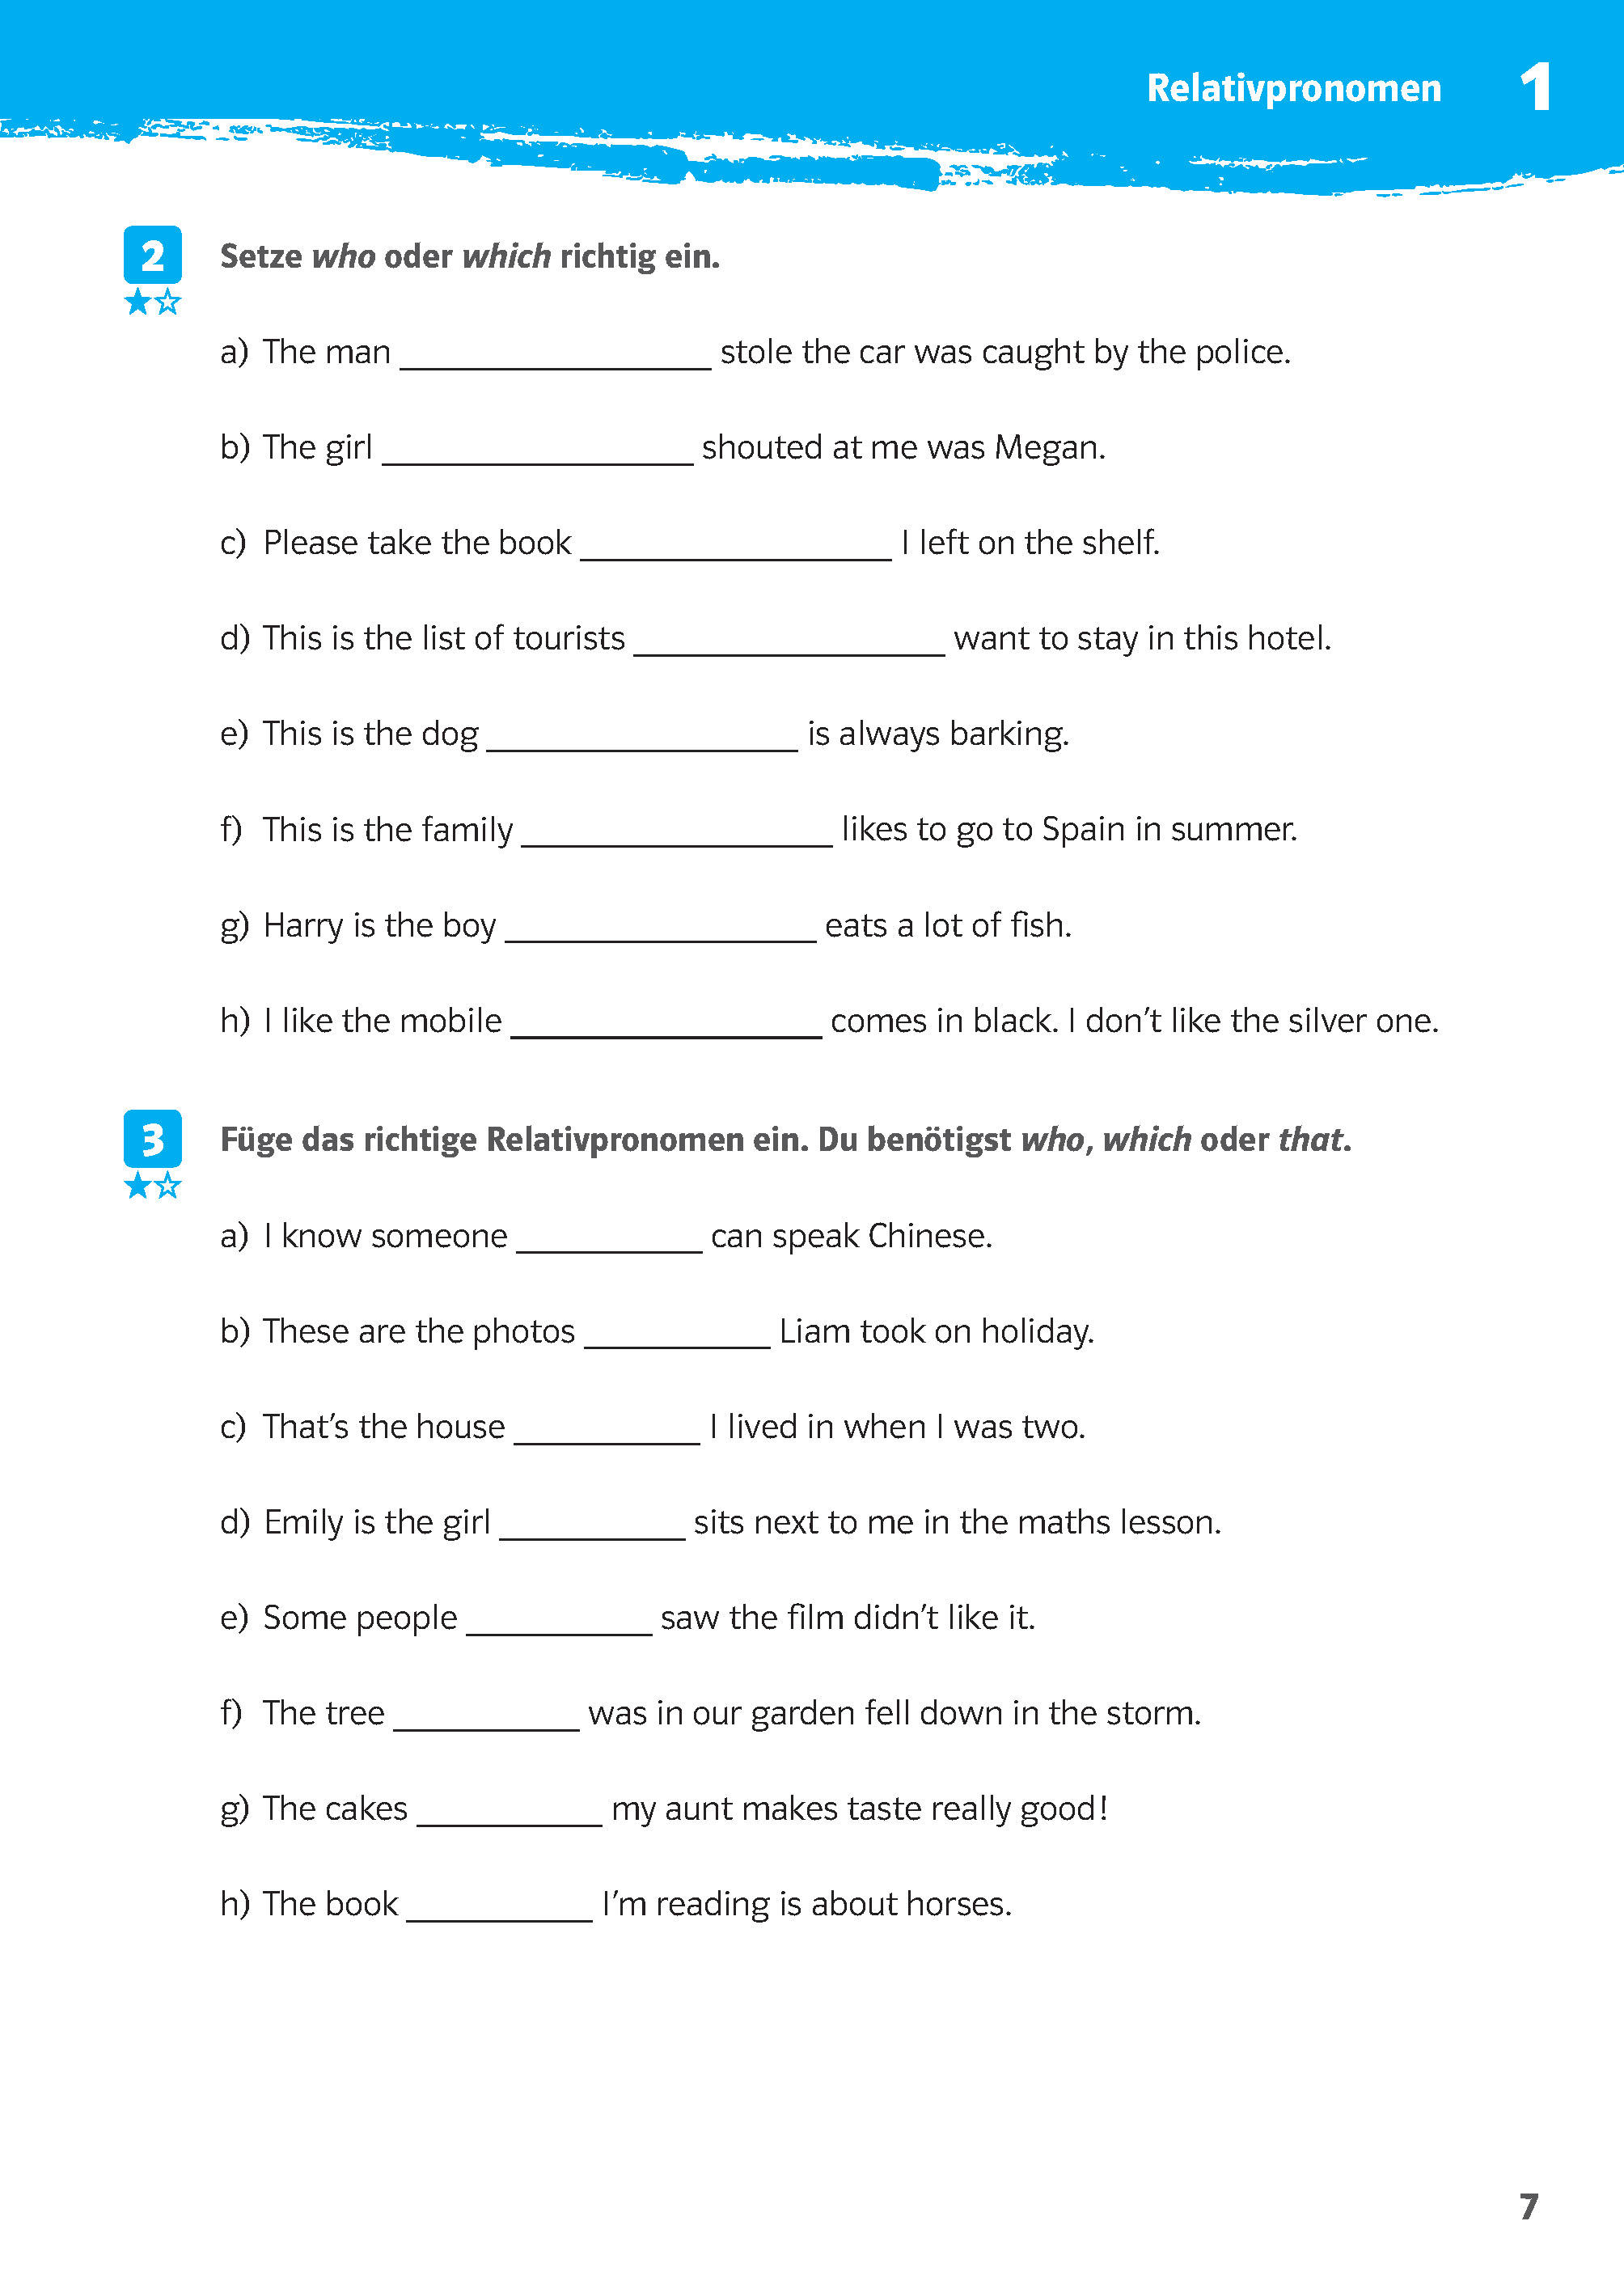 Klett 10-Minuten-Training Englisch Grammatik Relative Clauses 6./7. Klasse